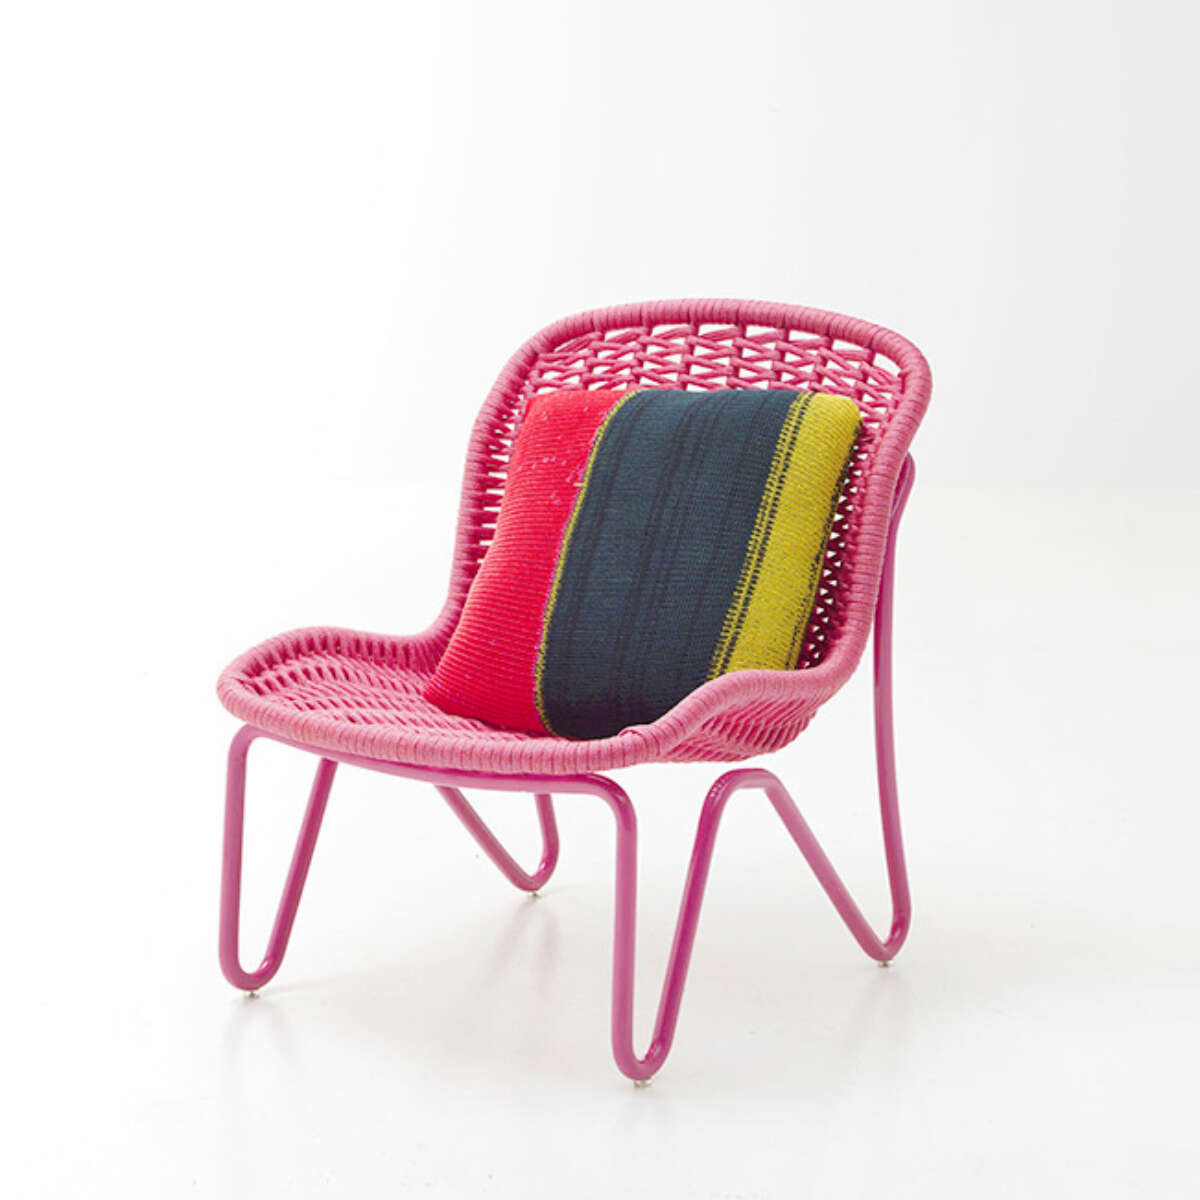 Jardin Lounge Chairs